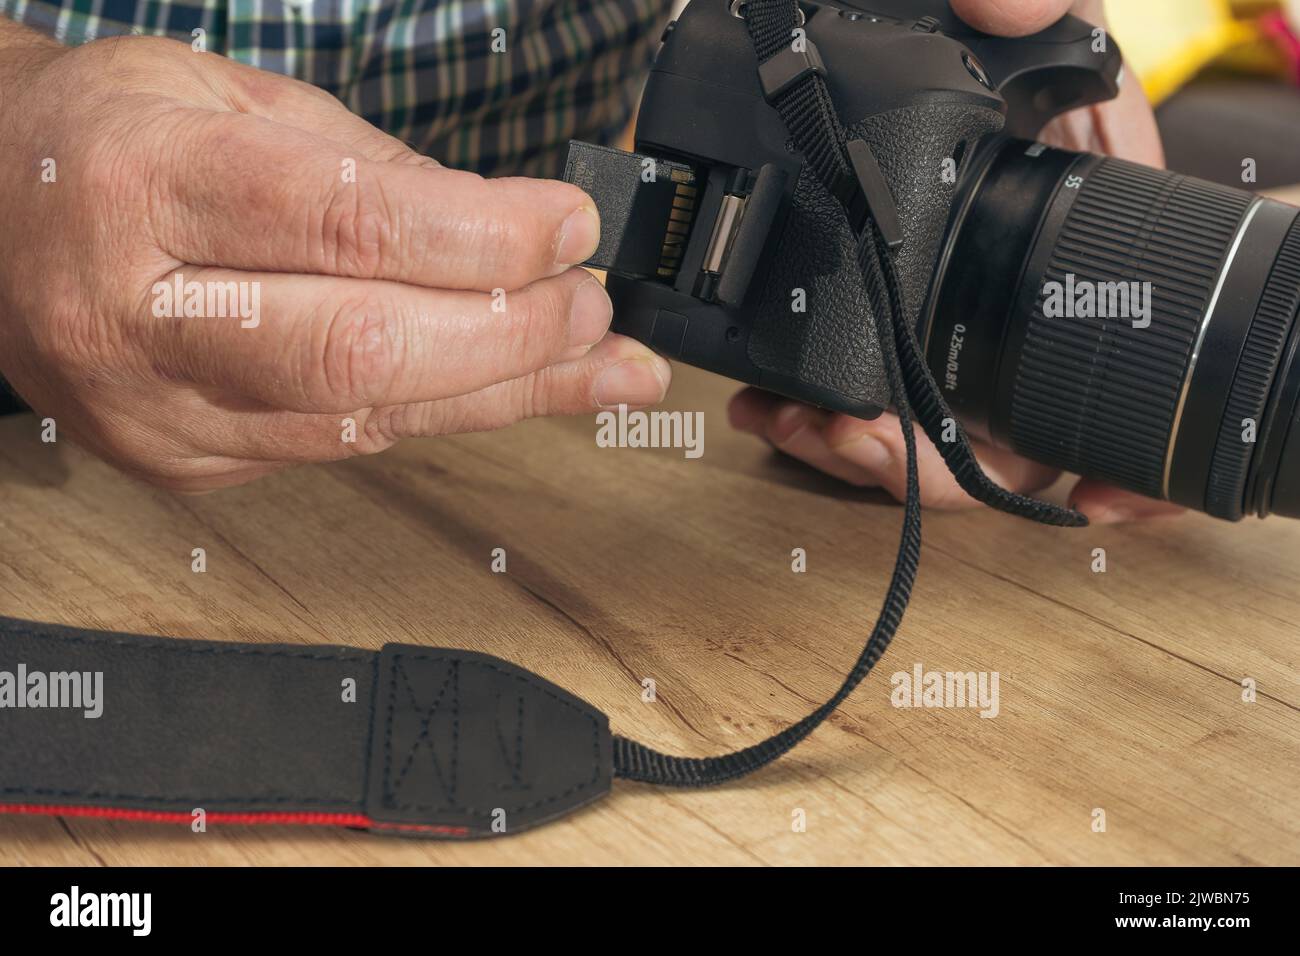 Photographe masculin insérant une carte mémoire flash tout en tenant un appareil photo professionnel. Banque D'Images